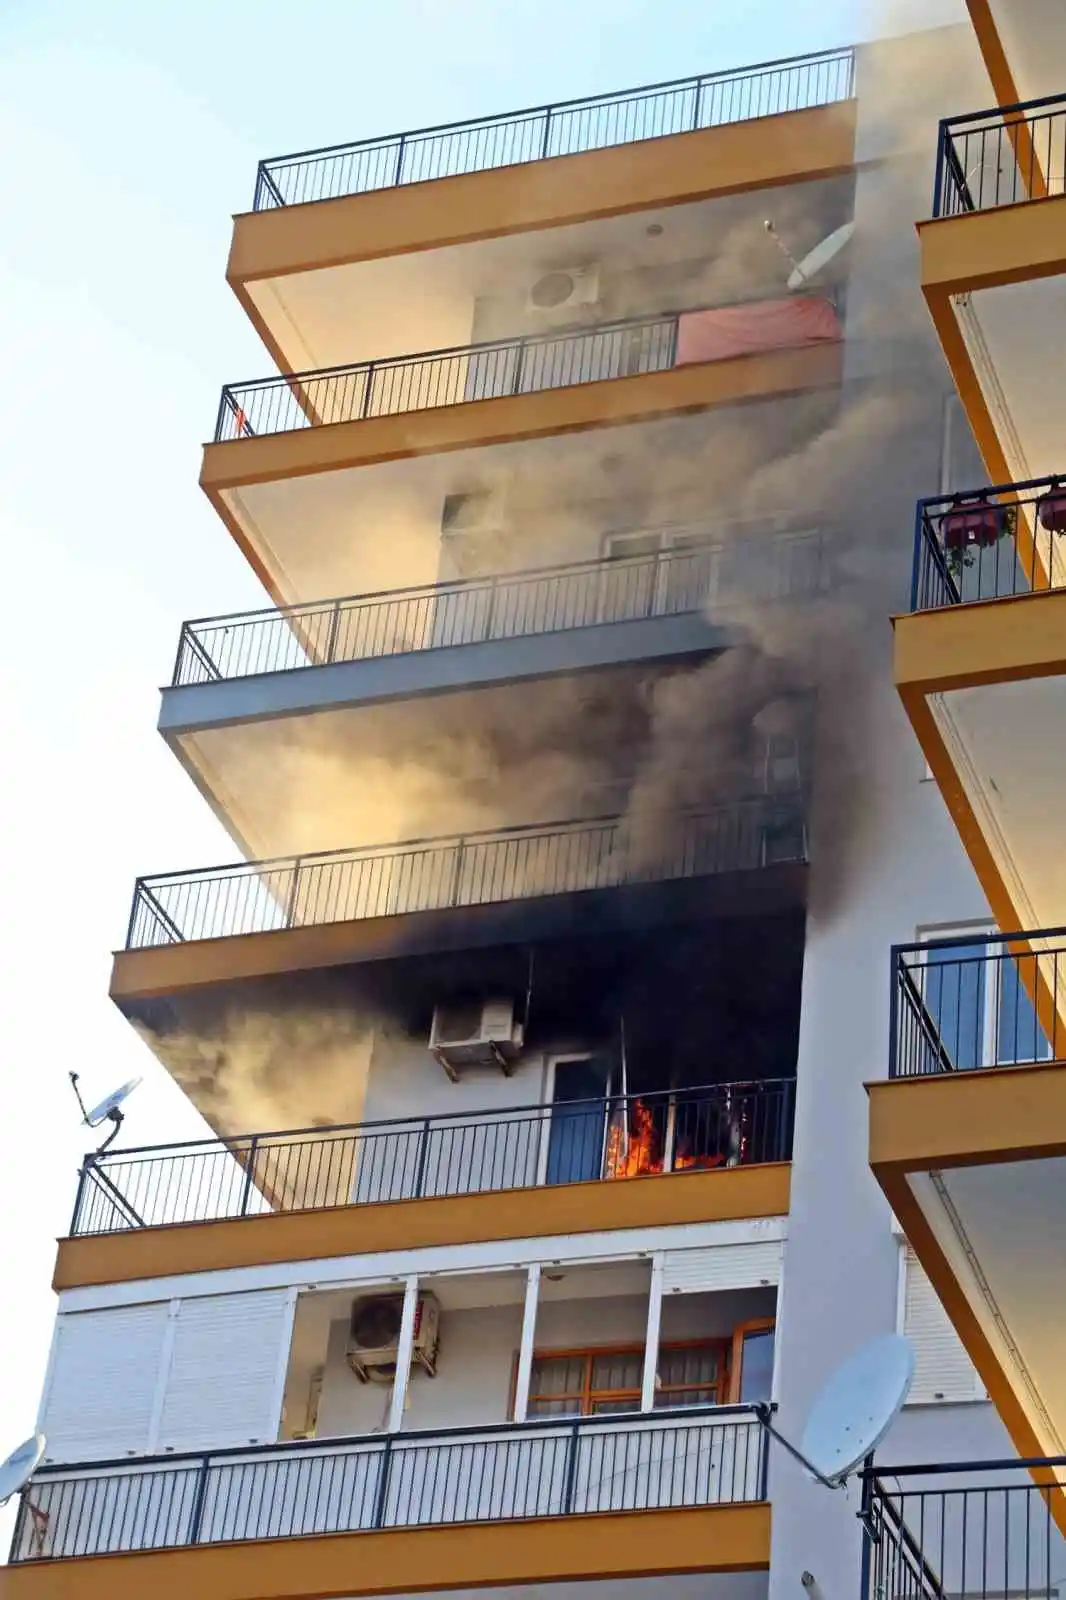 Antalya’da apartman sakinlerini sokağa döken yangın
